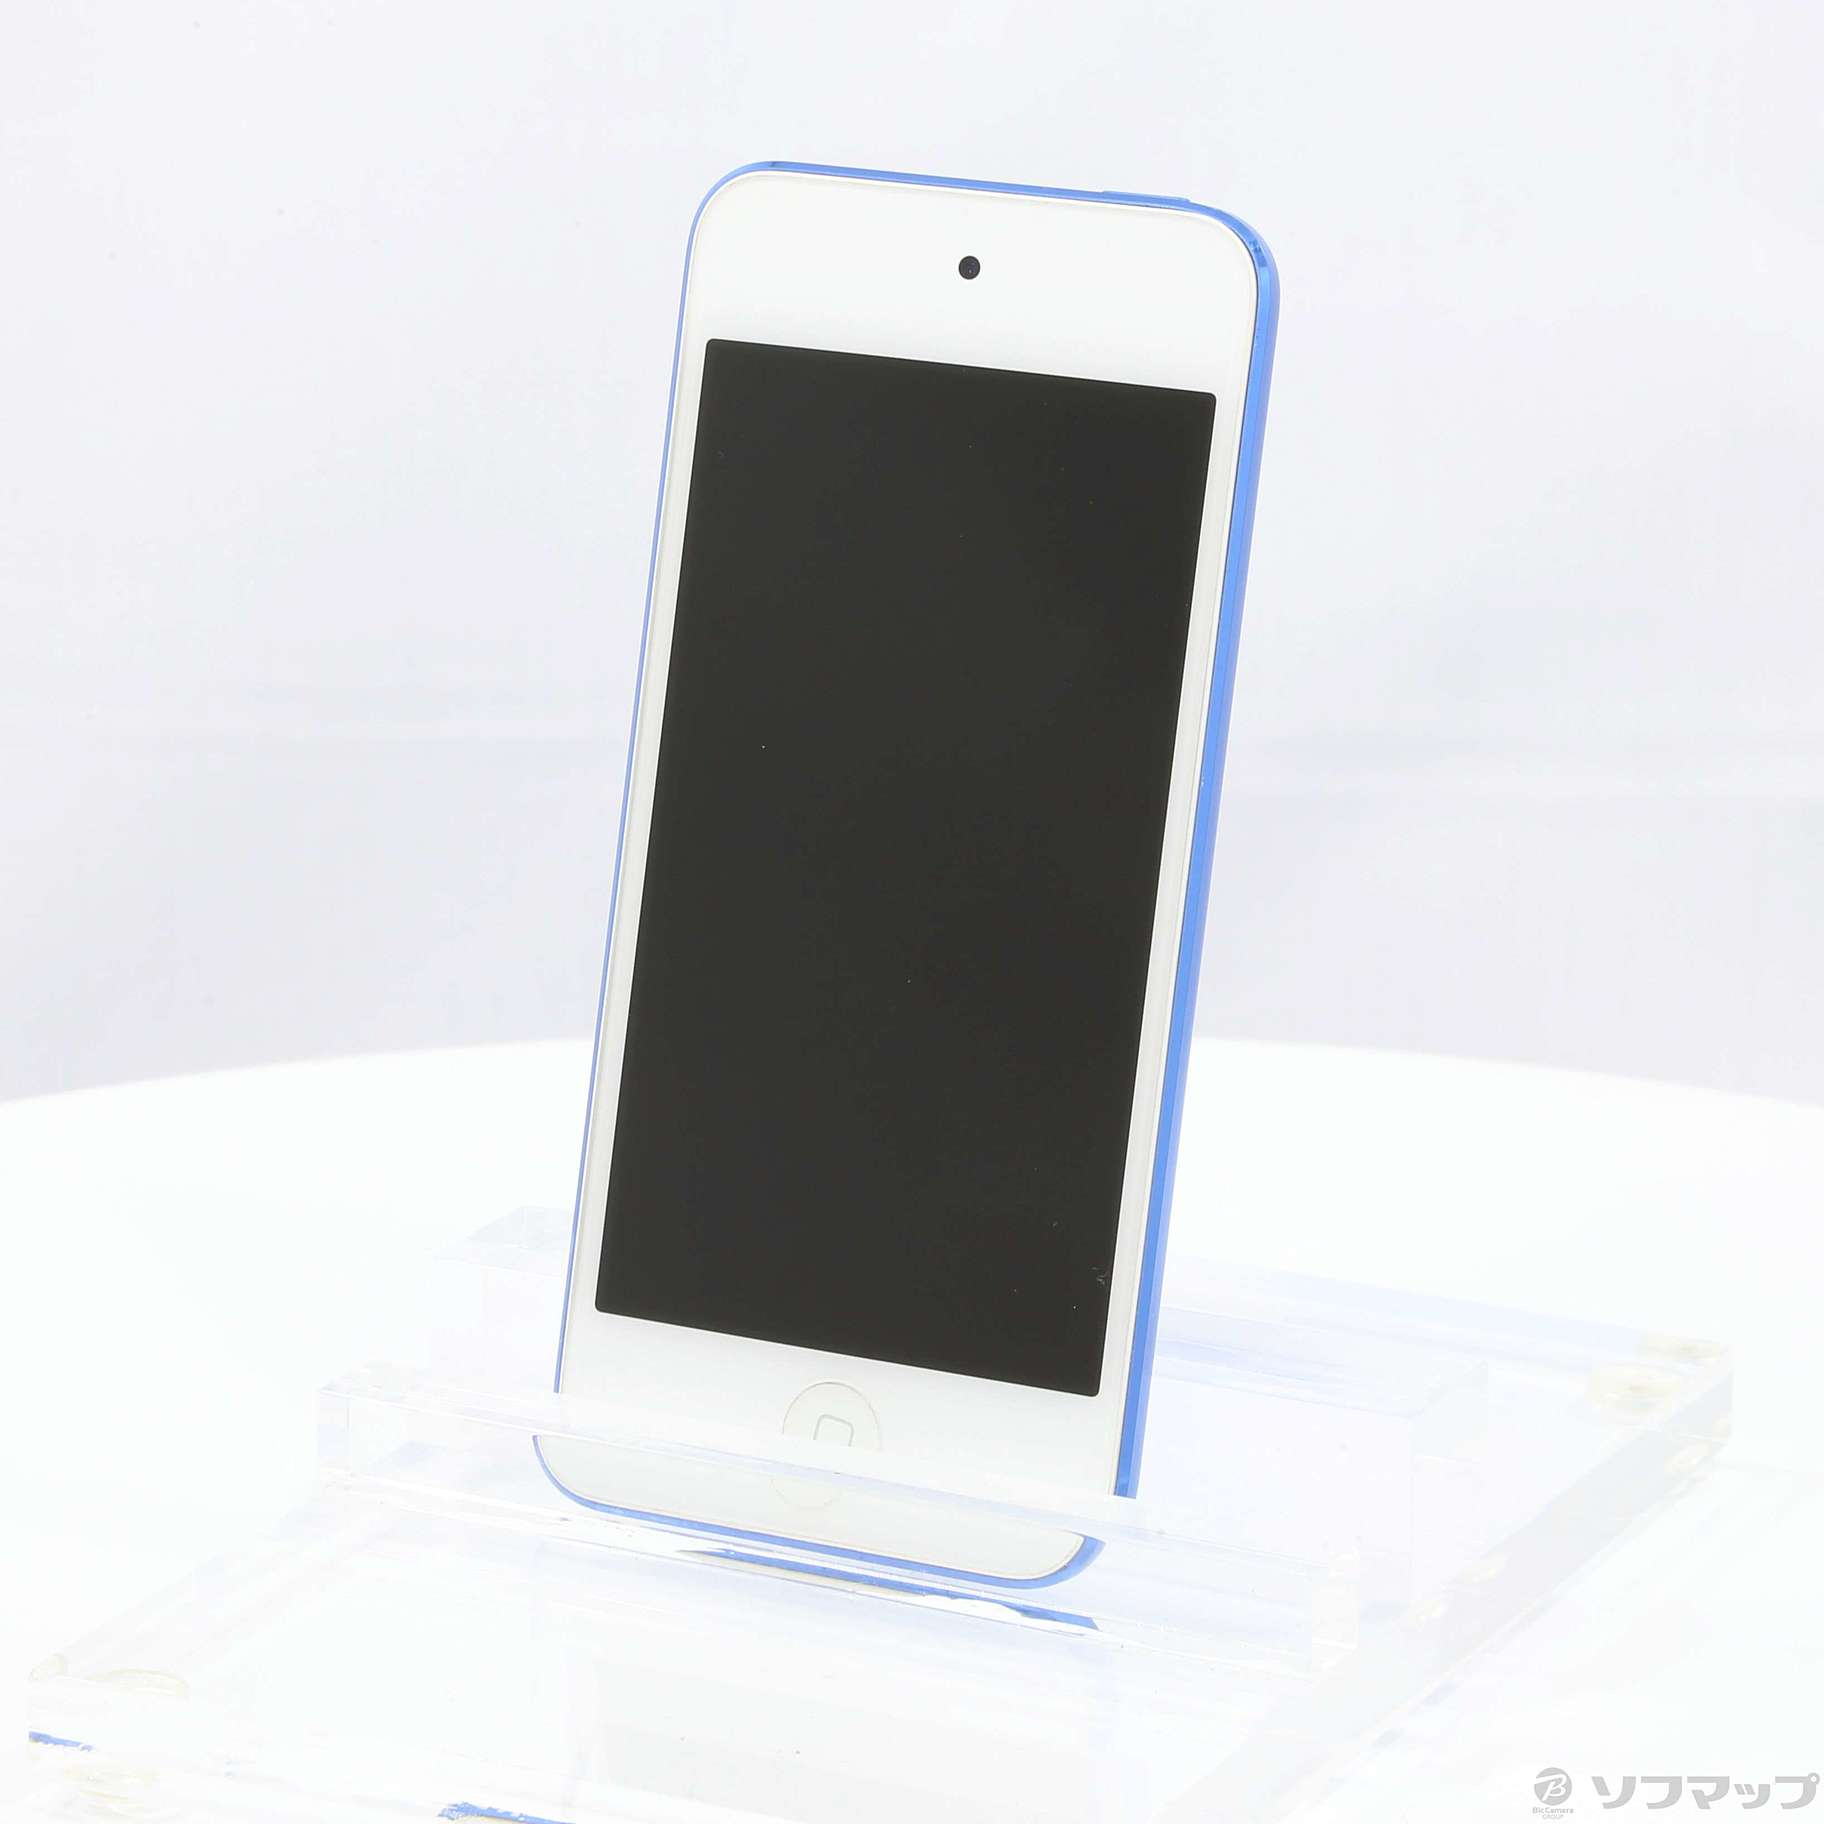 新しいスタイル iPod touch MKHV2J A 32GB ブルー